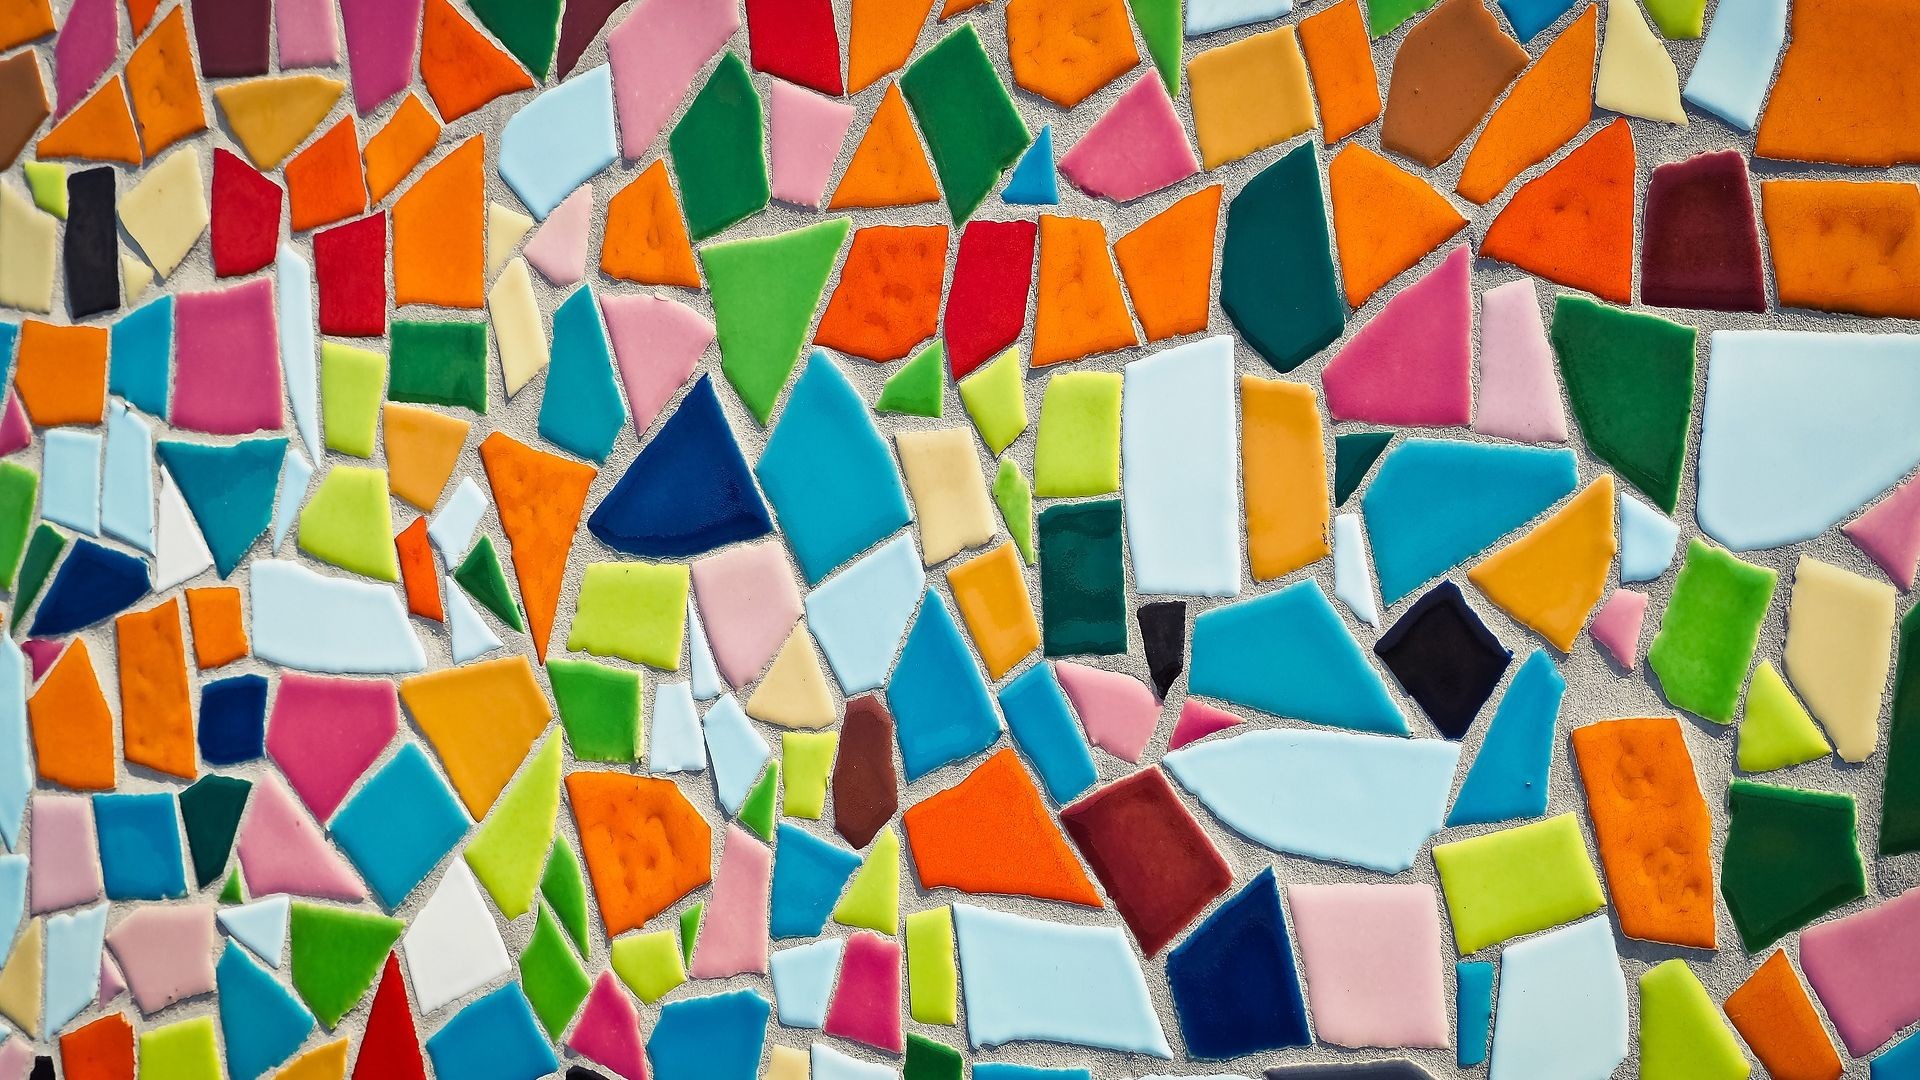 1920x1080 Abstract Art Mosaic Tiles Pattern Wallpaper